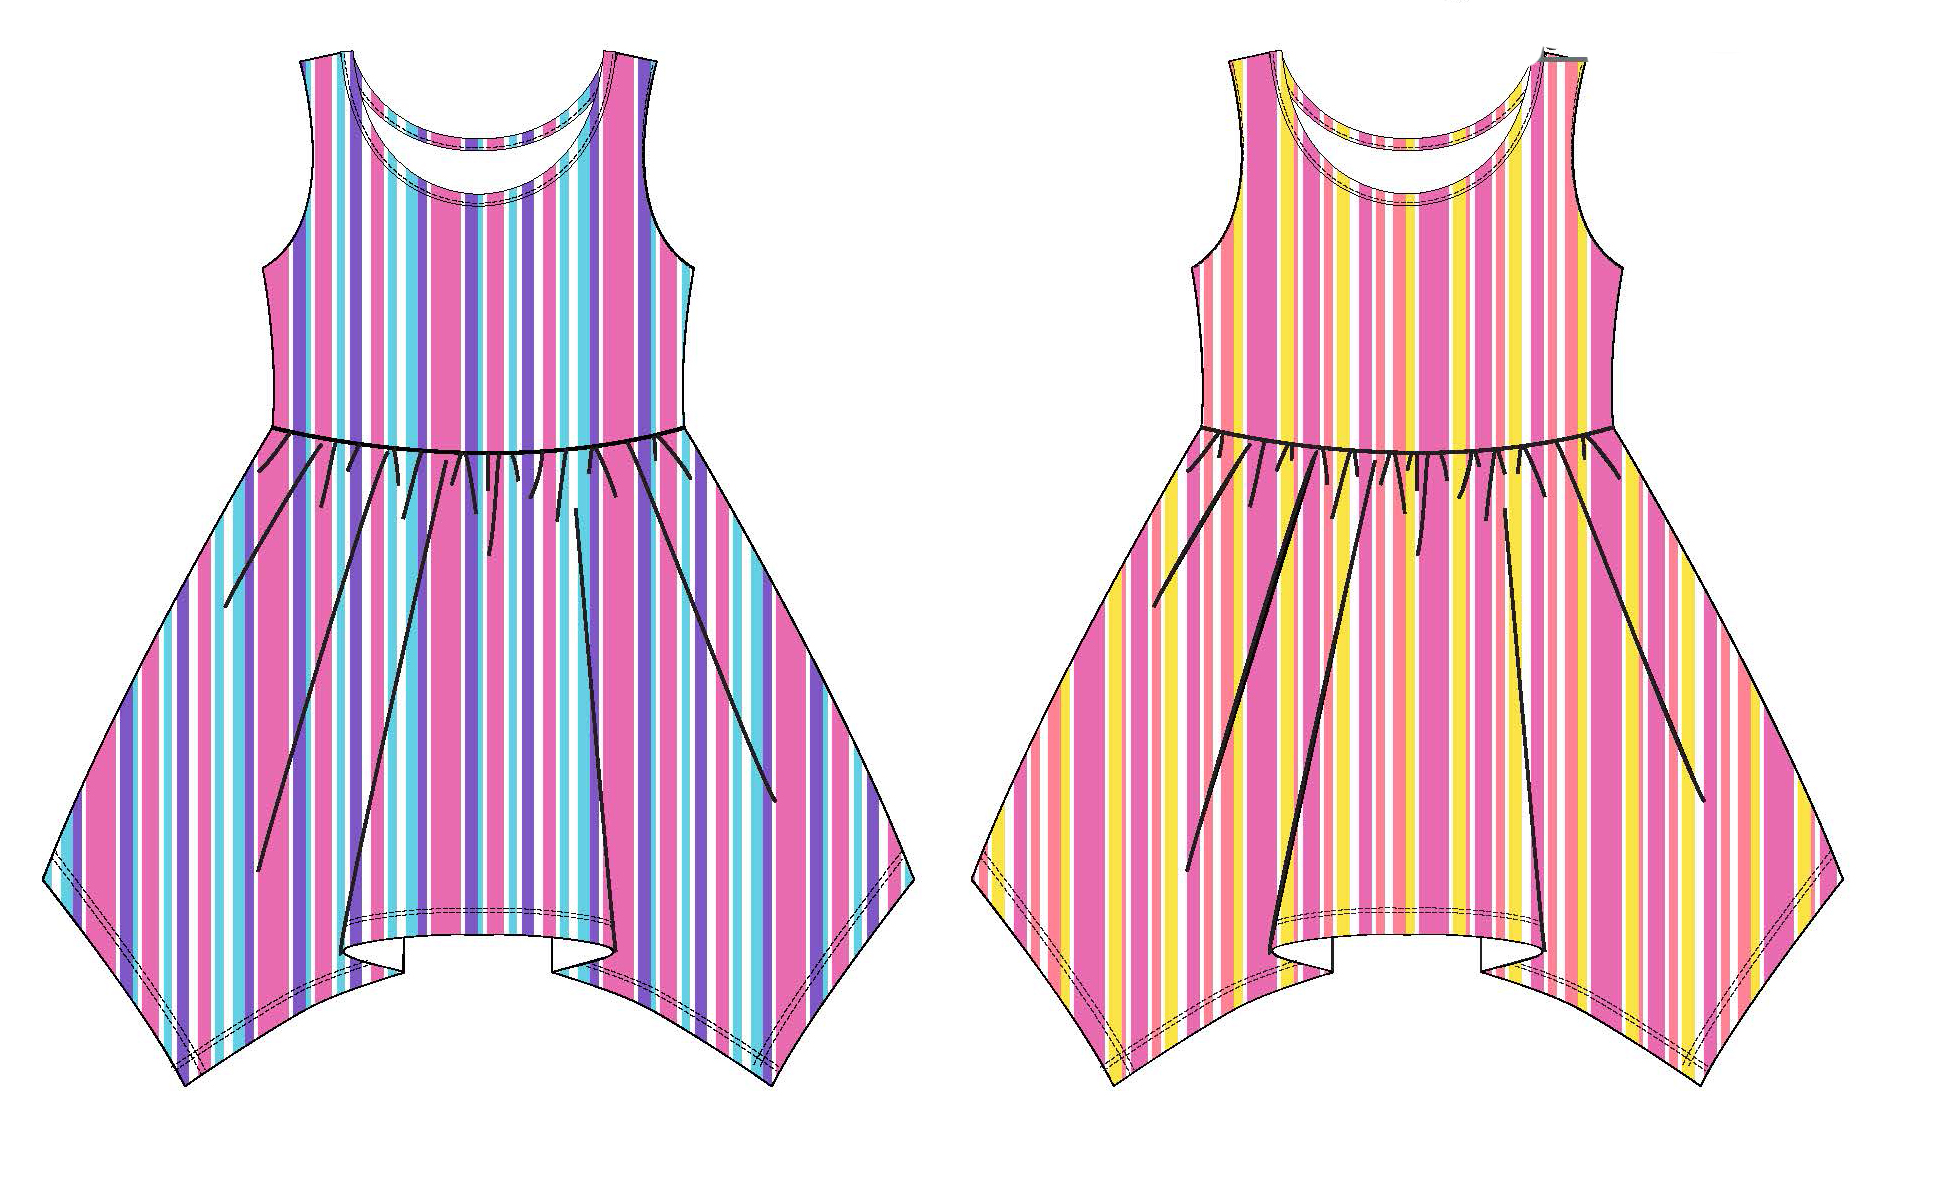 Baby Girl's Sleeveless Knit Shirtwaist DRESS w/ Two Tone Stripes - Size 0/3M-9M